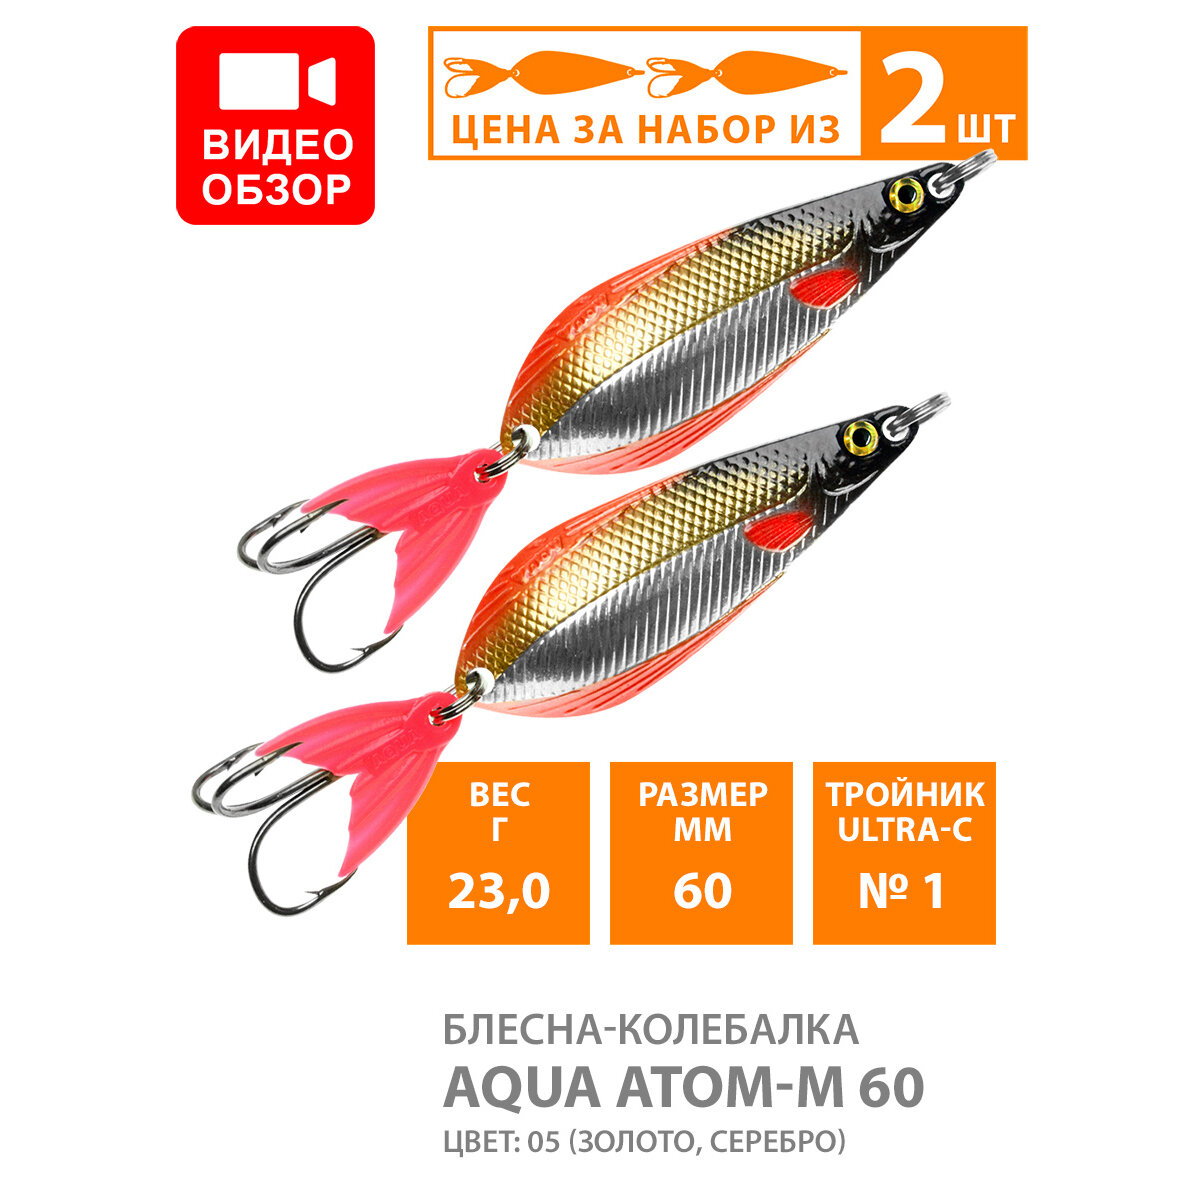 Блесна колебалка для рыбалки AQUA Атом M 60mm 23g цвет 05 2шт